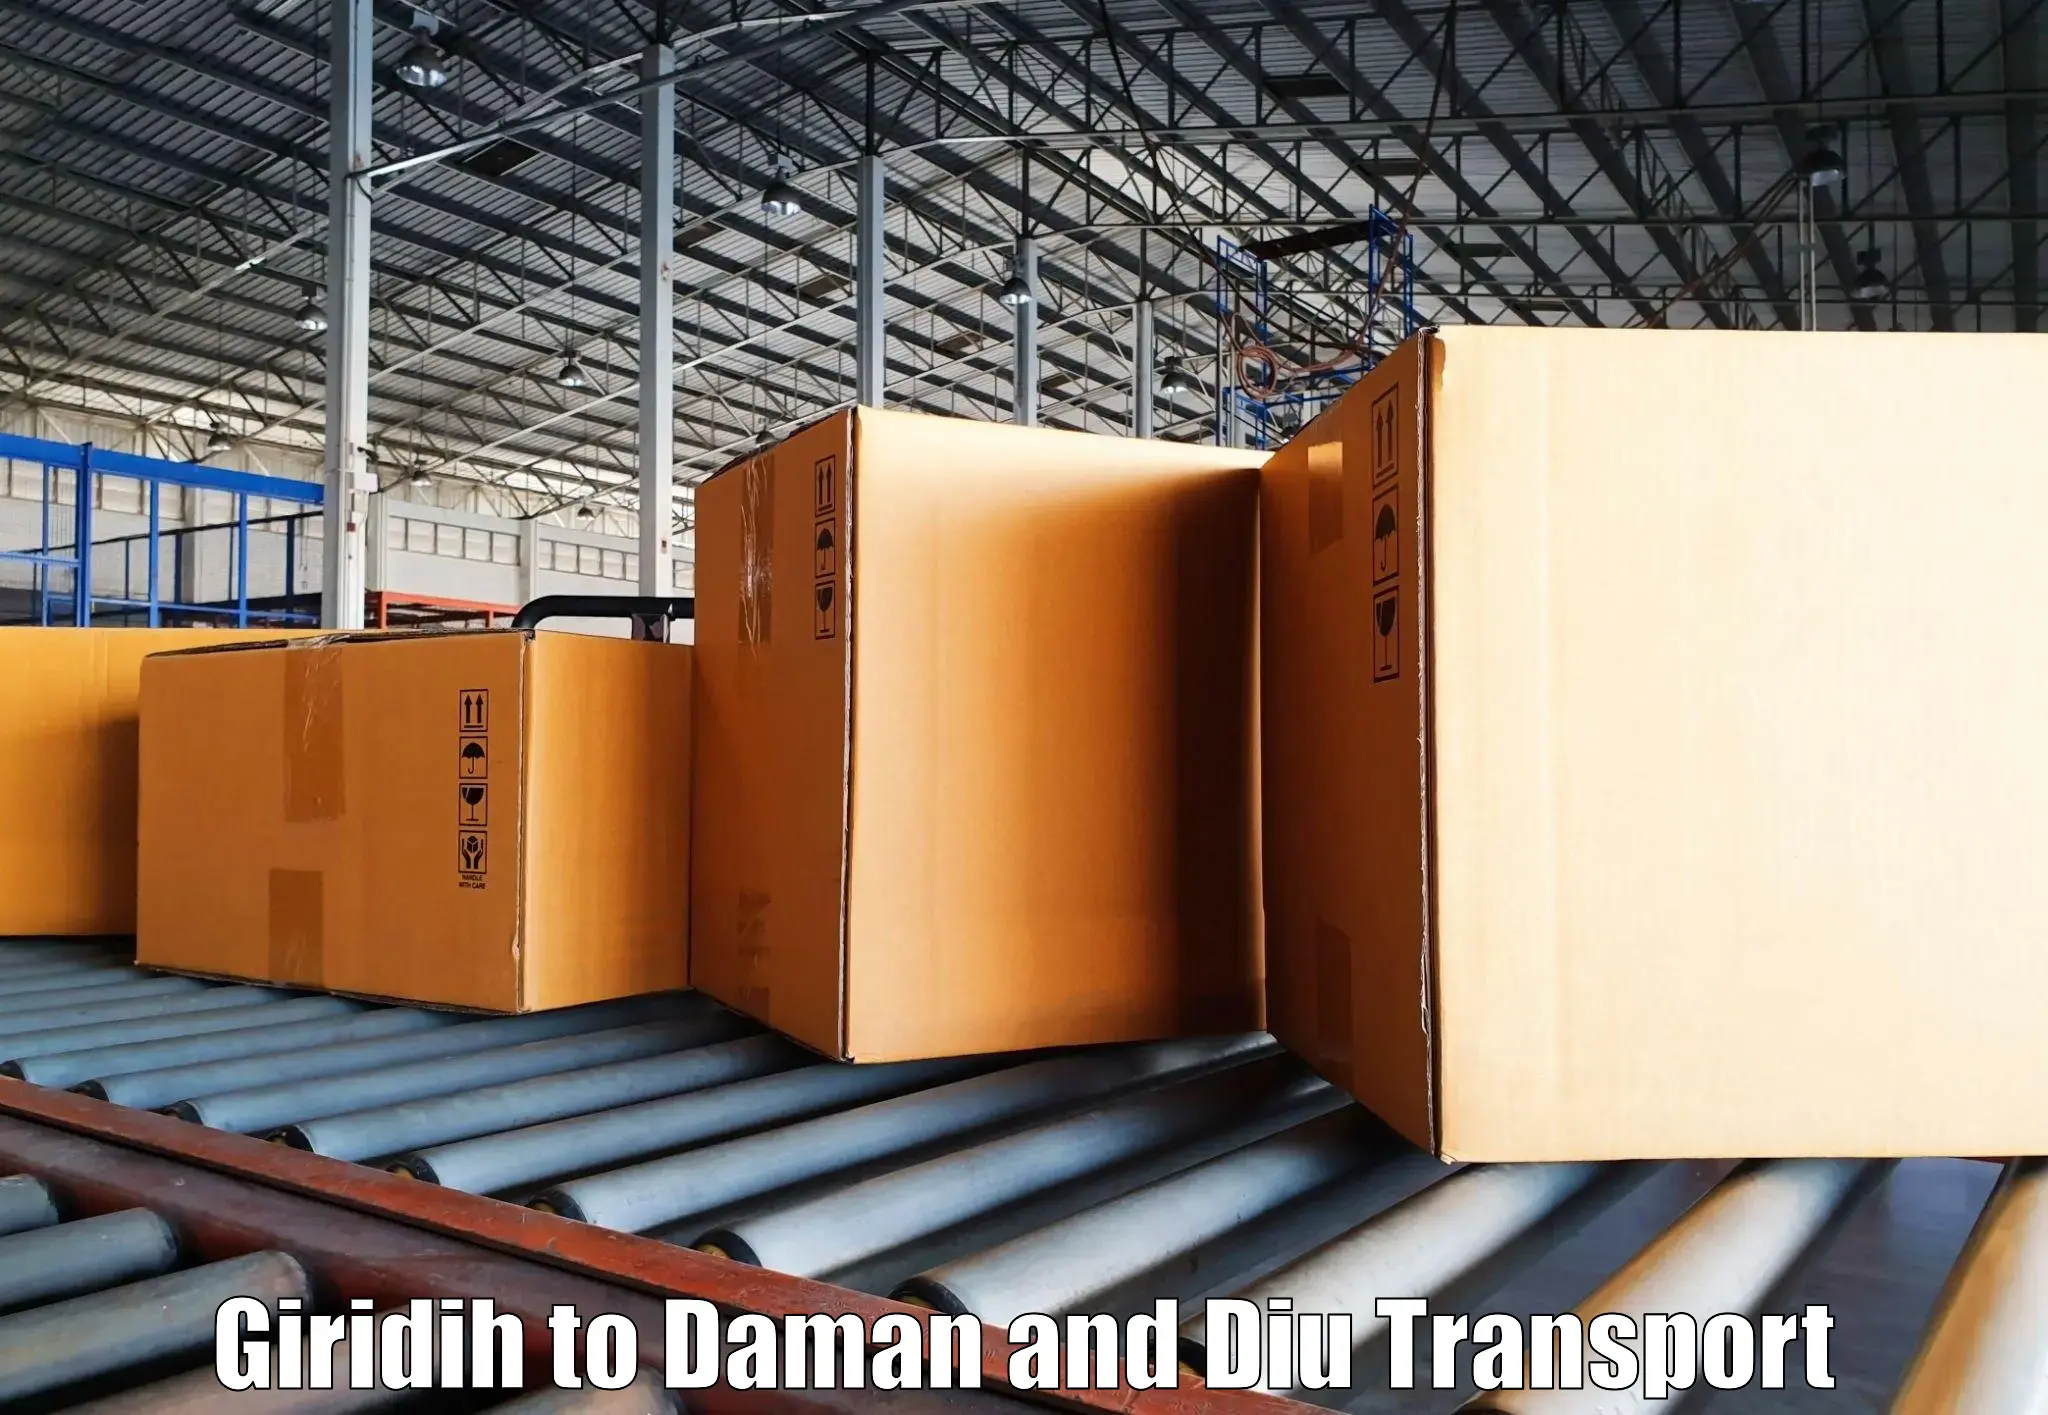 Daily parcel service transport Giridih to Daman and Diu